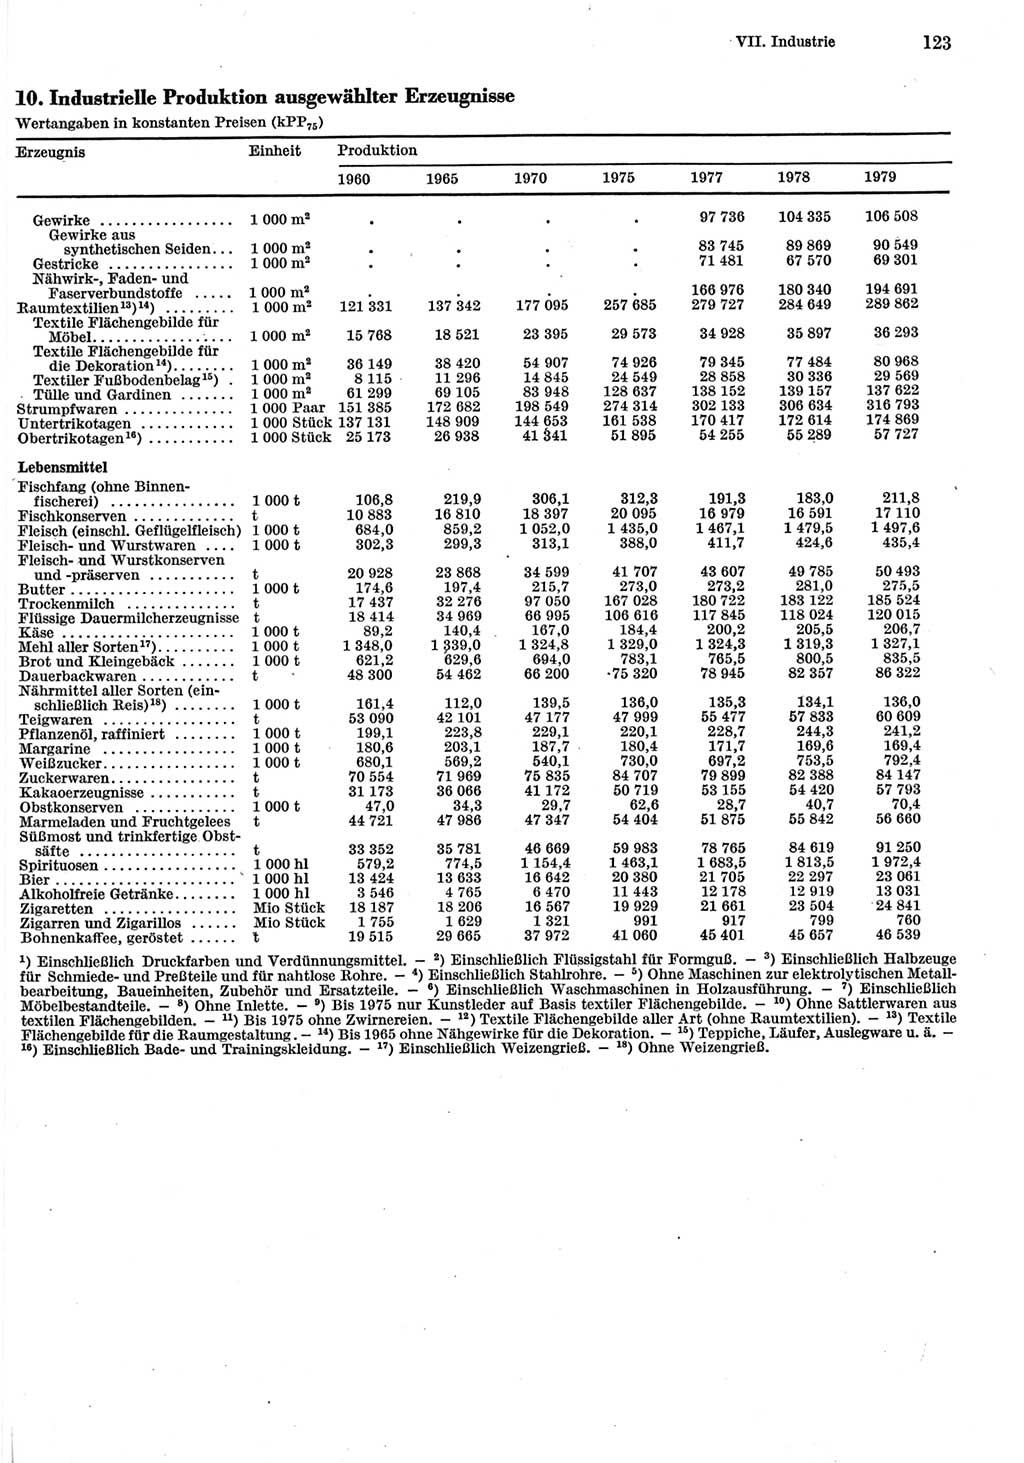 Statistisches Jahrbuch der Deutschen Demokratischen Republik (DDR) 1980, Seite 123 (Stat. Jb. DDR 1980, S. 123)